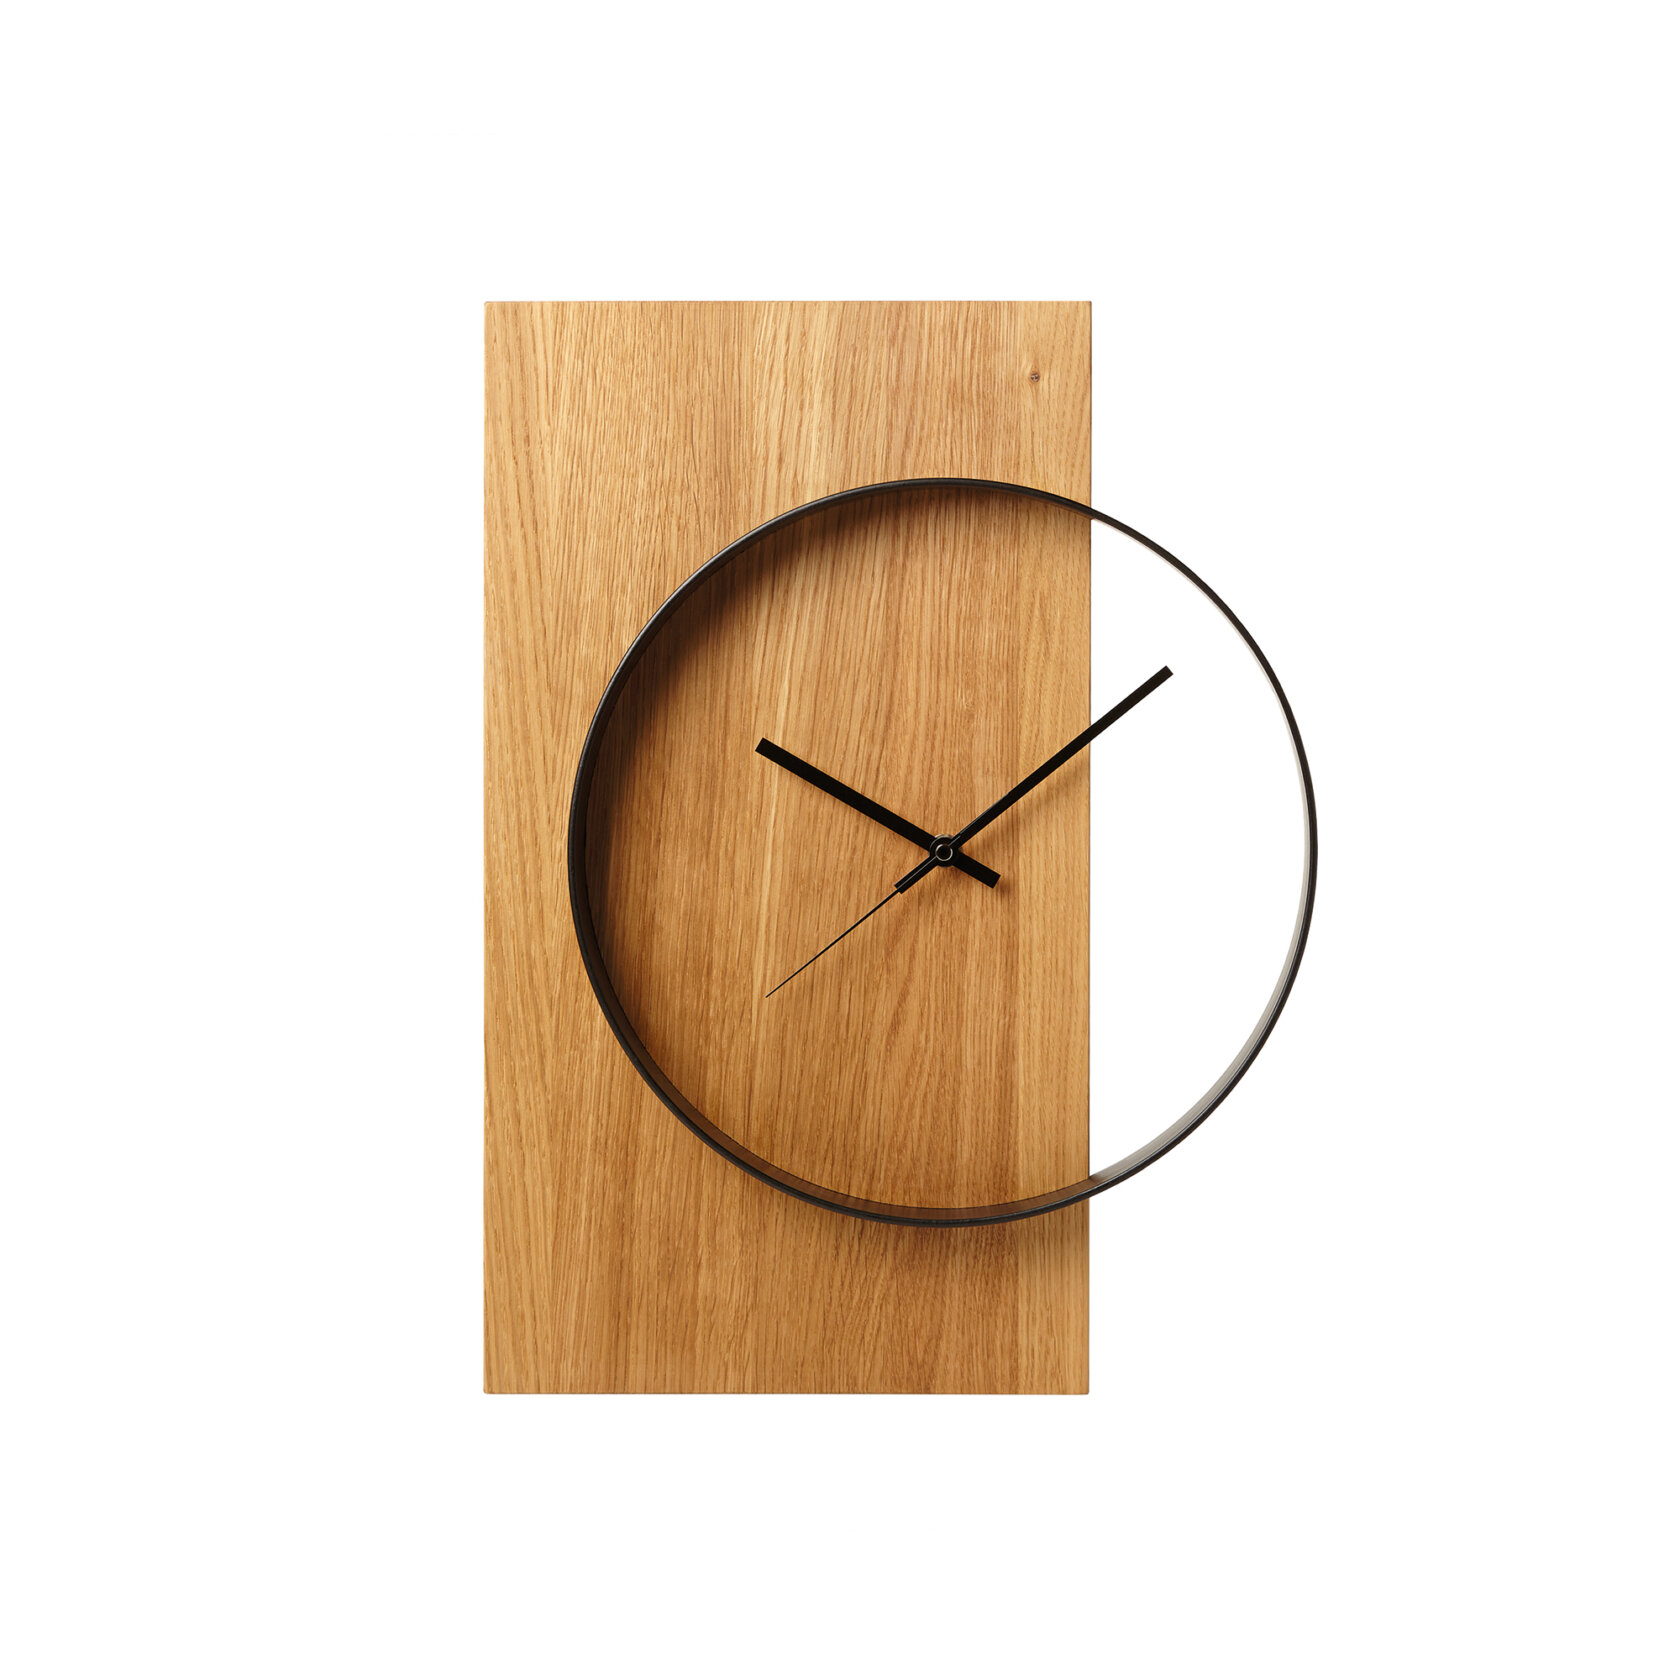 Dekorative Wanduhr aus Holz, große Uhr oder kleine Uhr, Statement